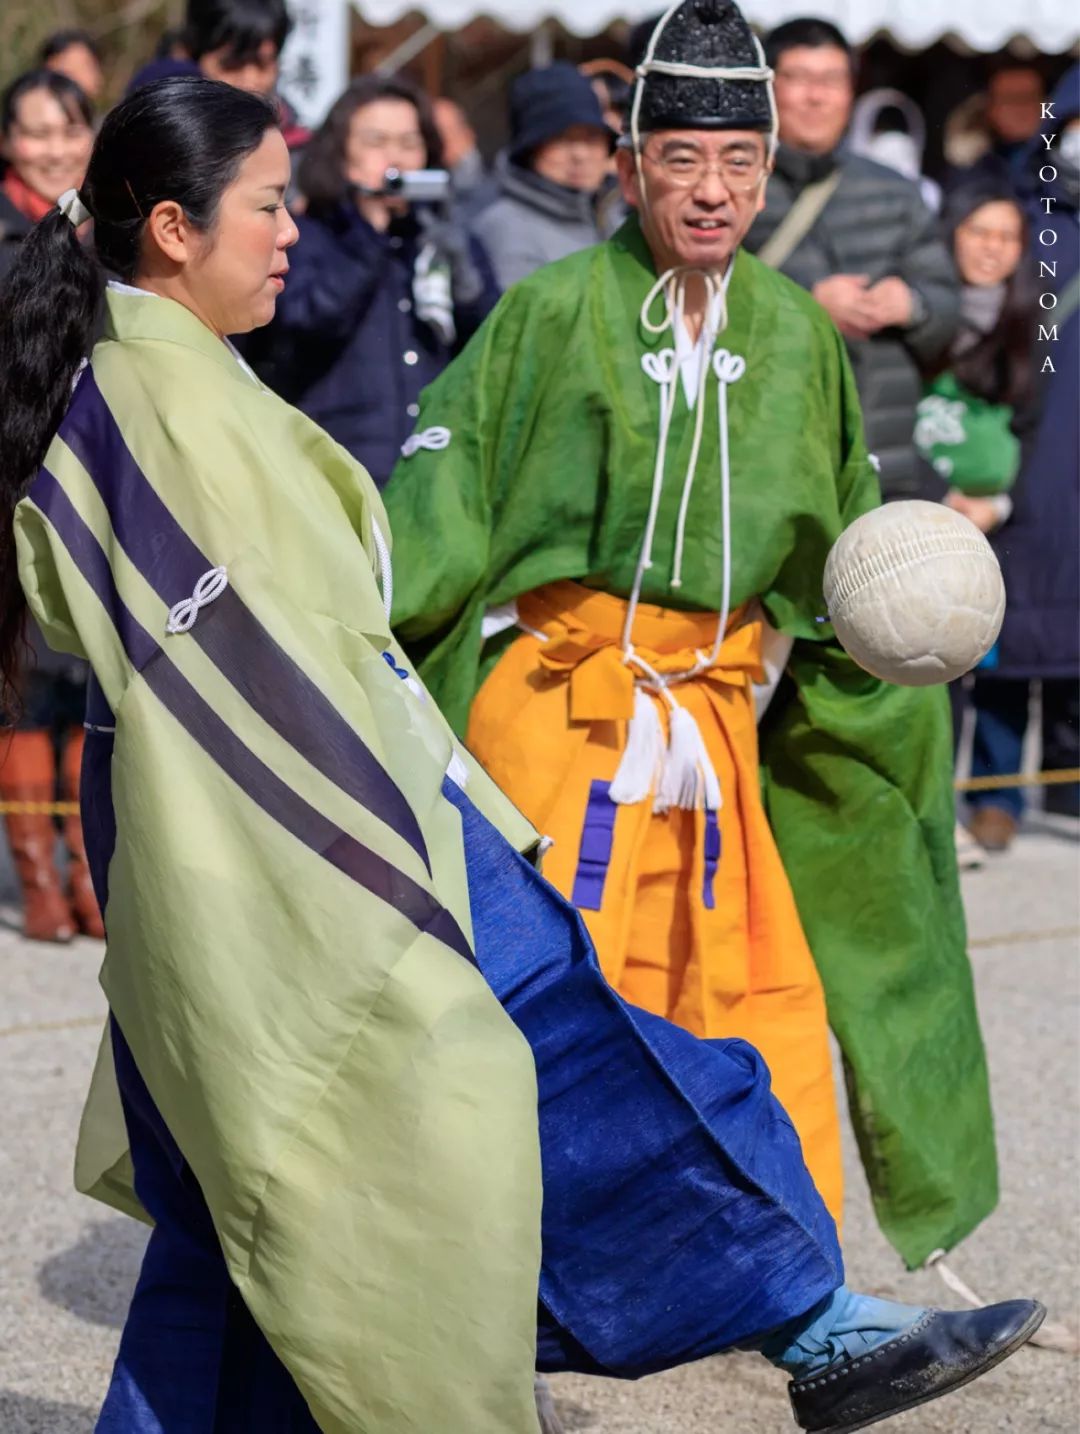 京都之间丨想来京都看一场平安贵族的风雅世界杯吗?